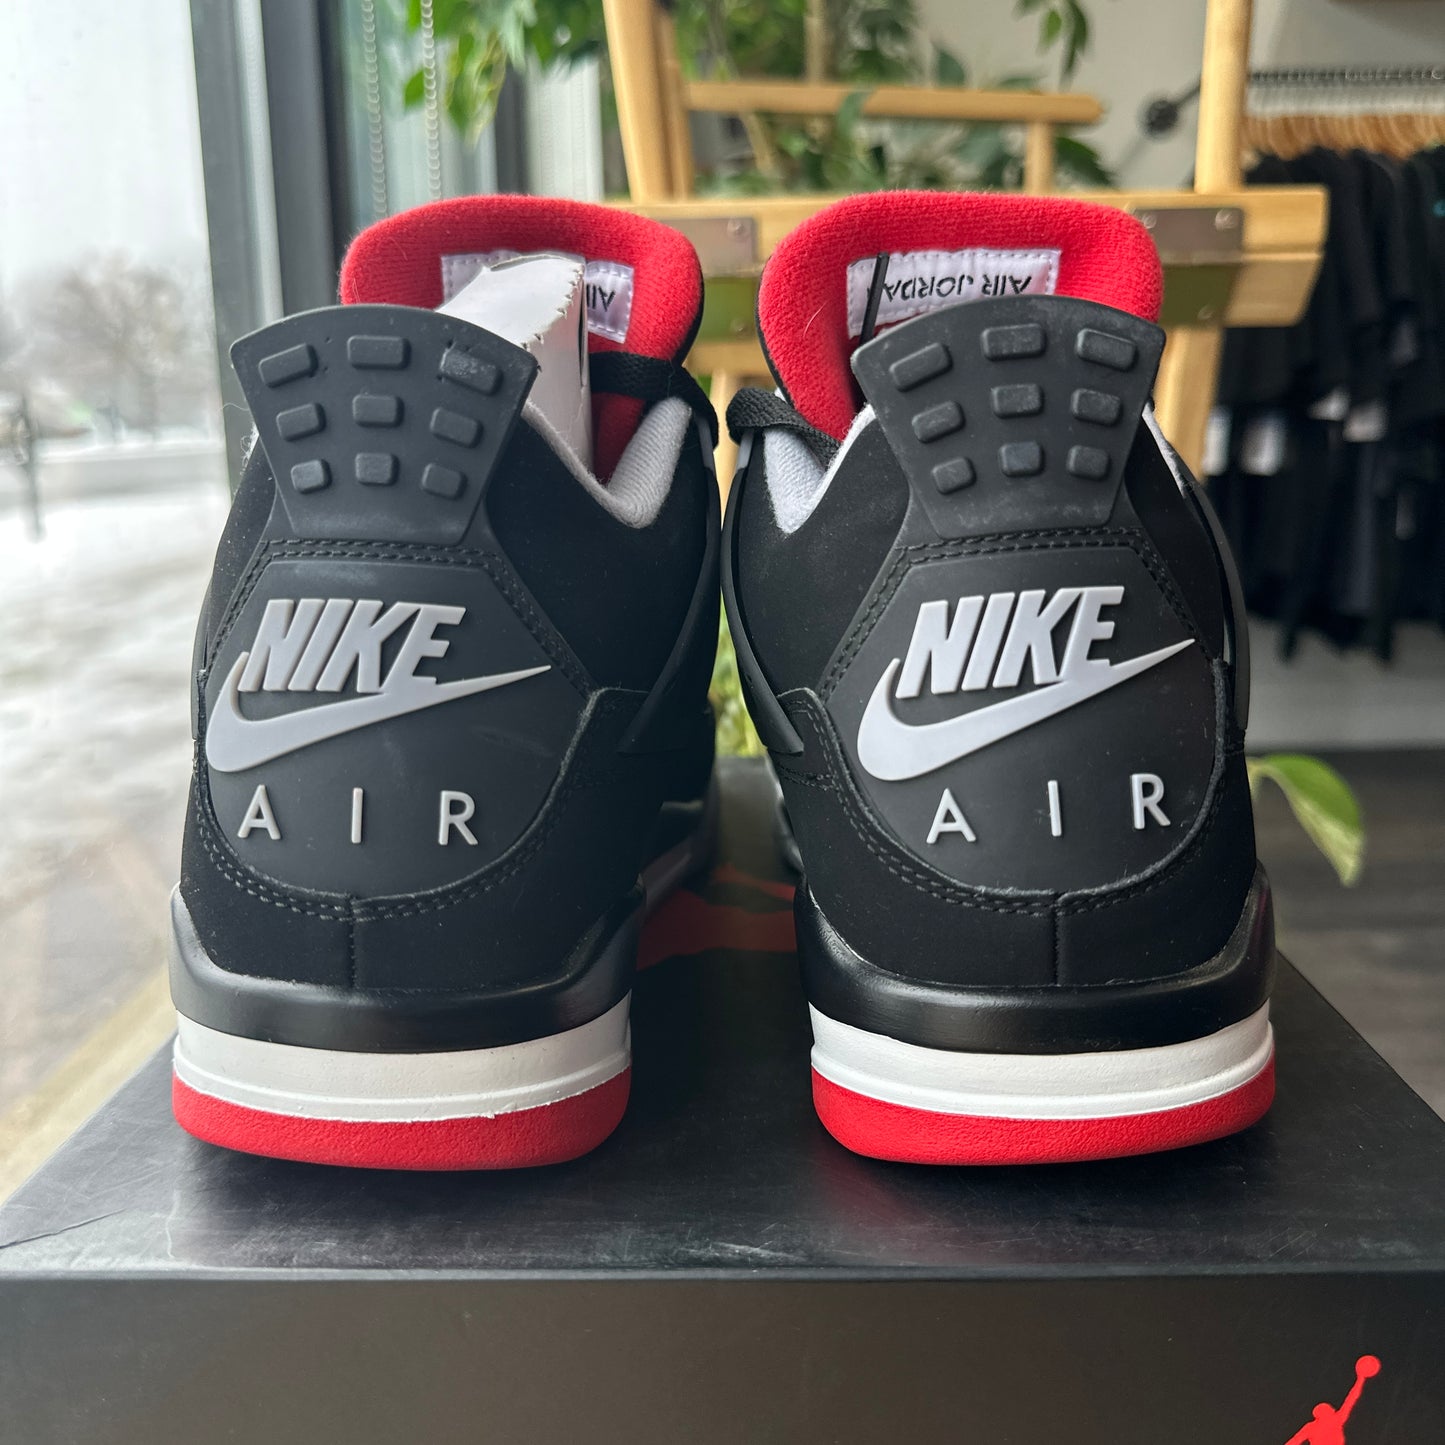 Air Jordan 4 "Bred" Size 10